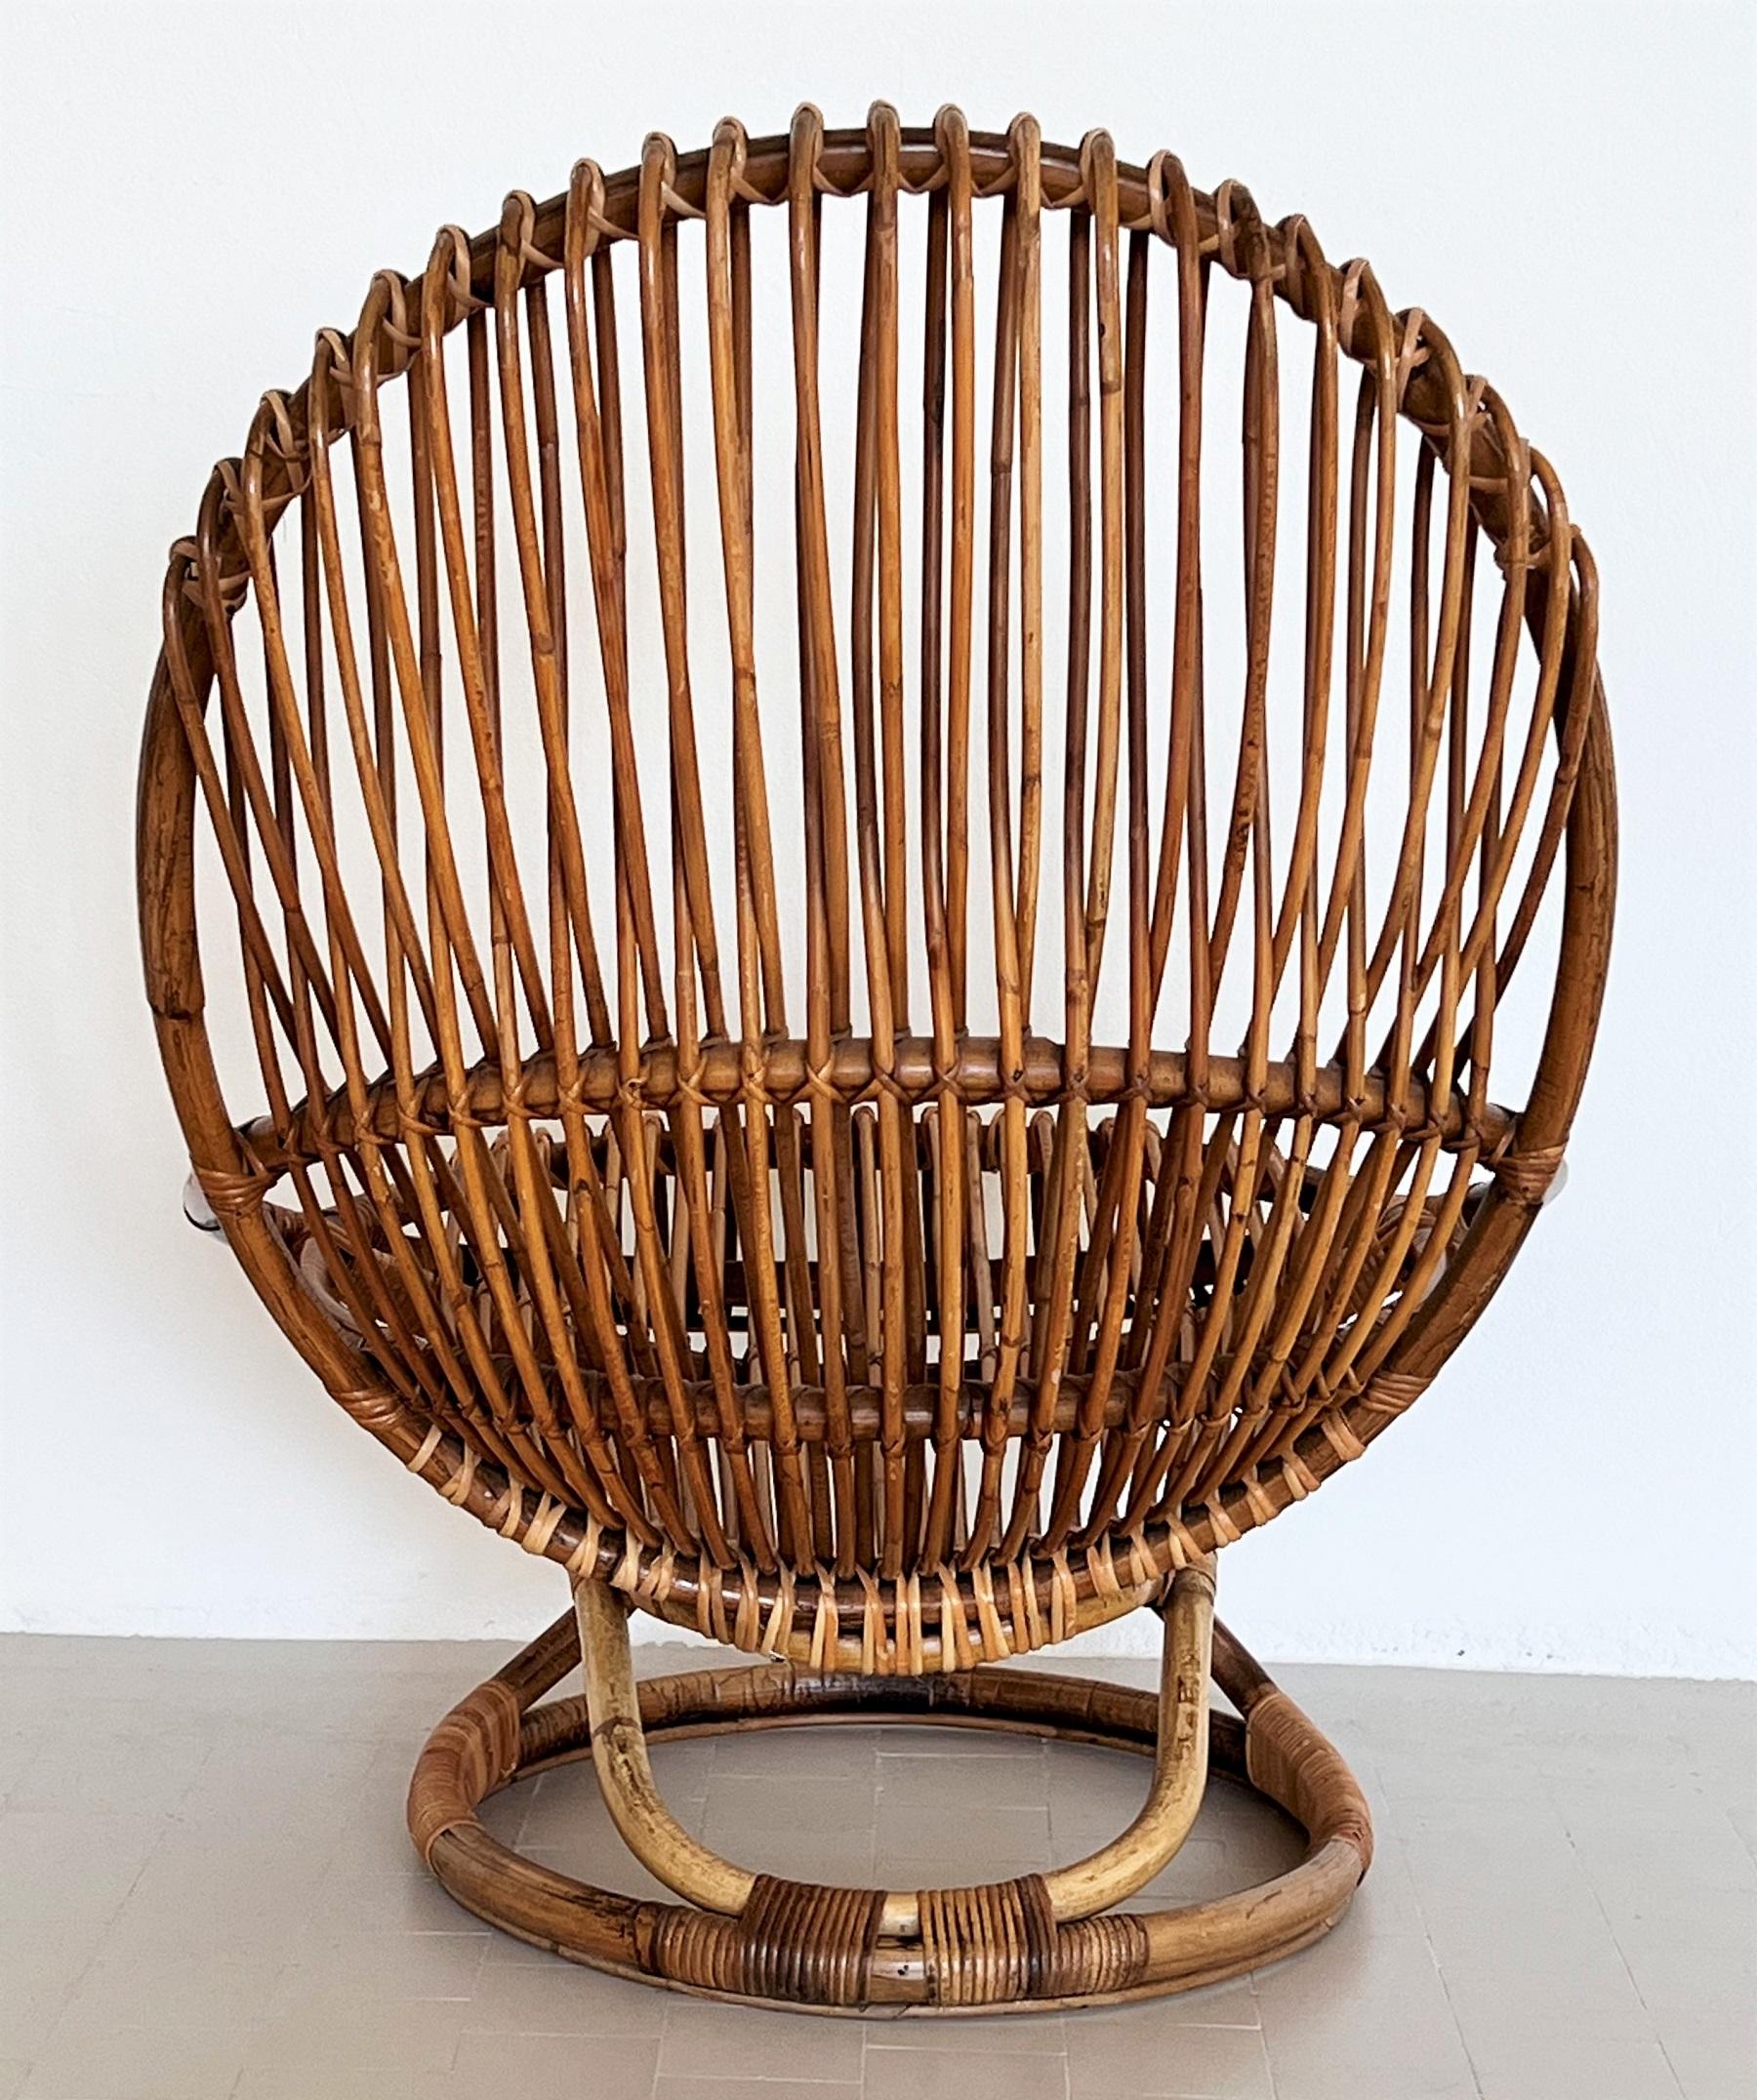 Italian Giovanni Travasa for Bonacina Rattan Lounge Chair, 1950s